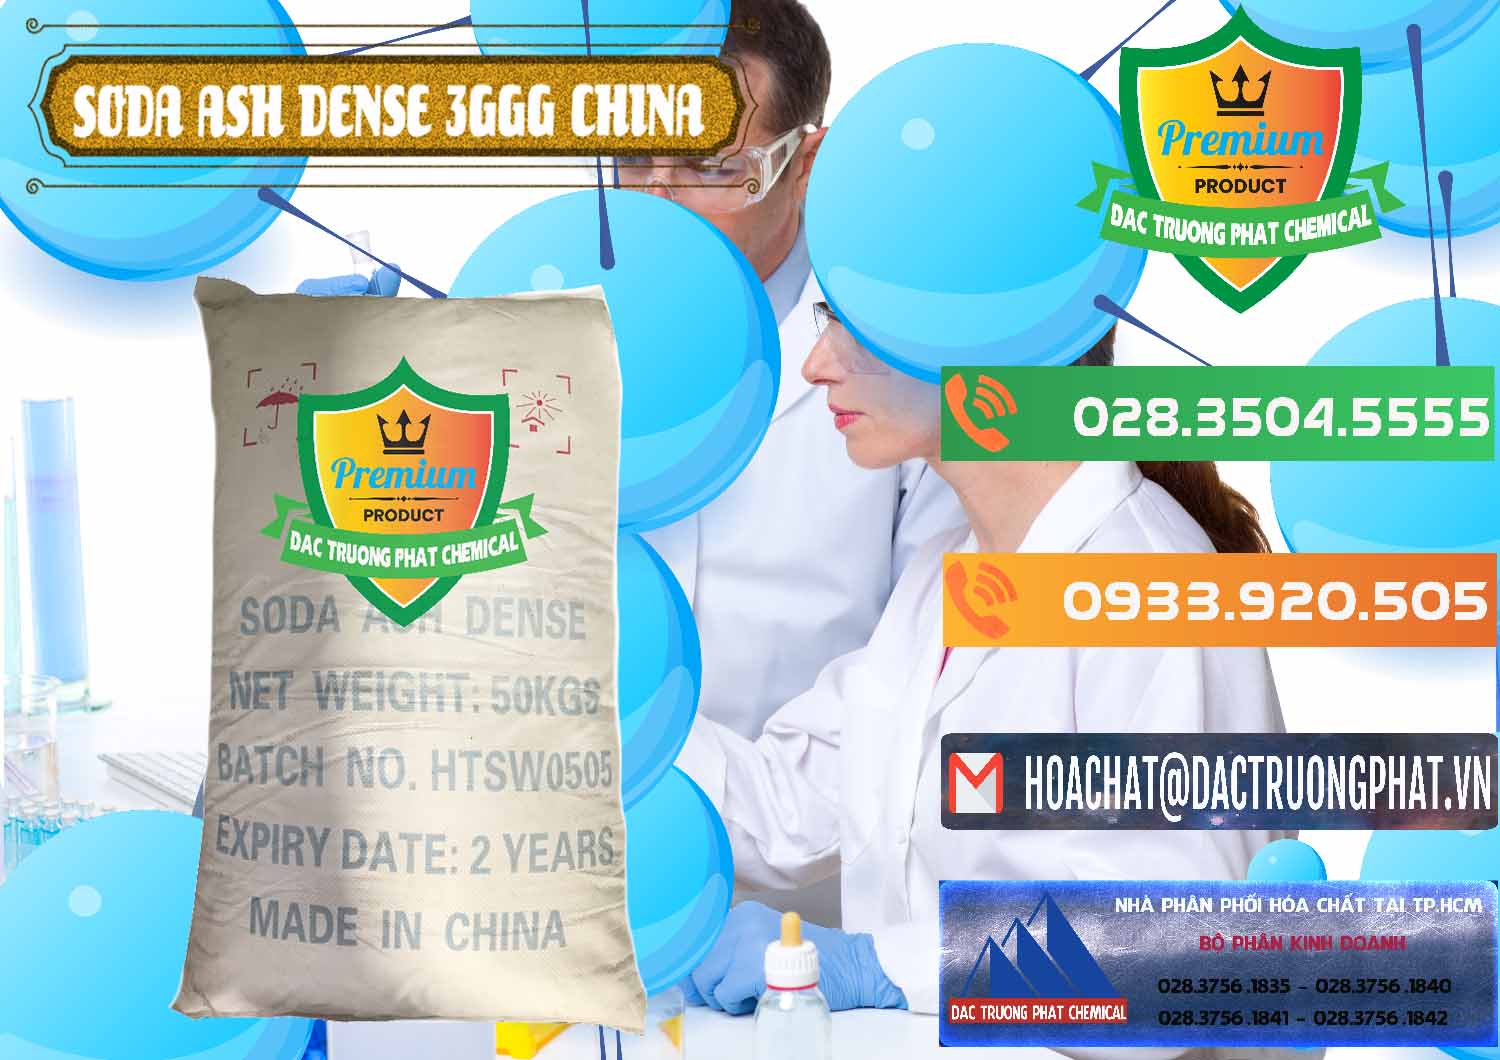 Nơi chuyên bán _ phân phối Soda Ash Dense - NA2CO3 3GGG Trung Quốc China - 0335 - Nhà phân phối ( kinh doanh ) hóa chất tại TP.HCM - hoachatxulynuoc.com.vn